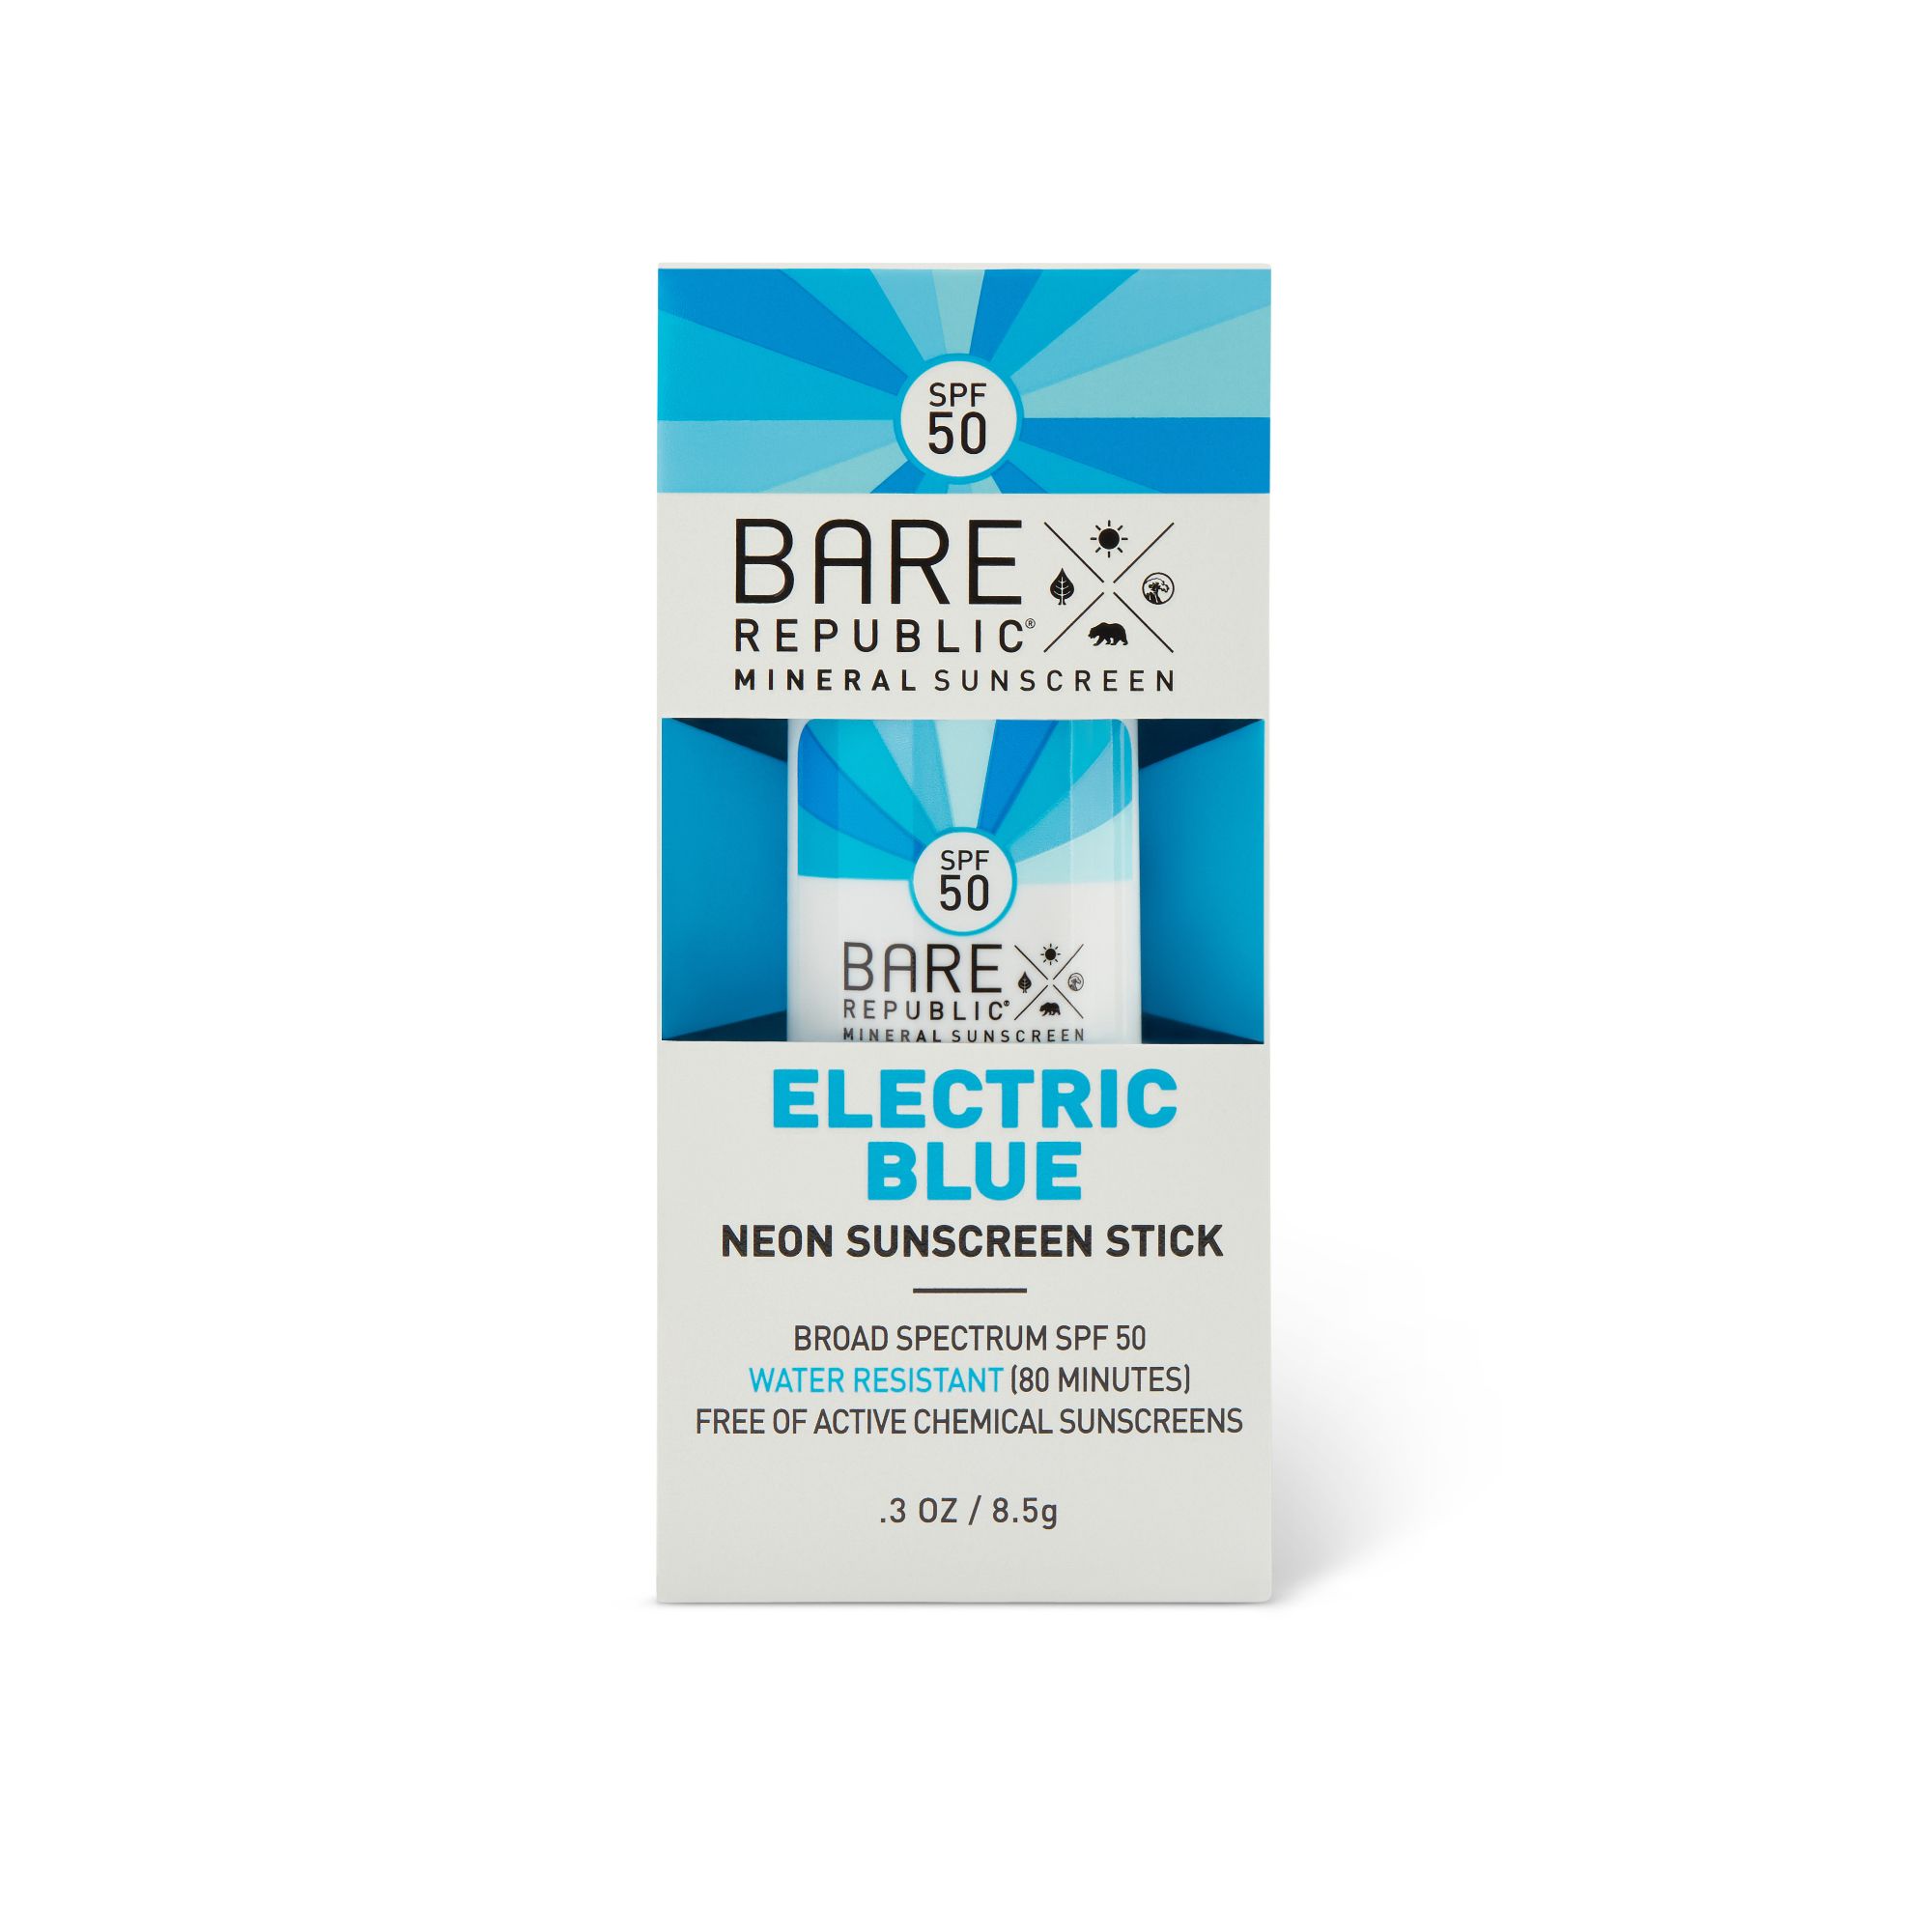 Bare Republic Mineral Sunscreen Neon Stick, Blazing Blue, SPF 50 - 0.3 oz